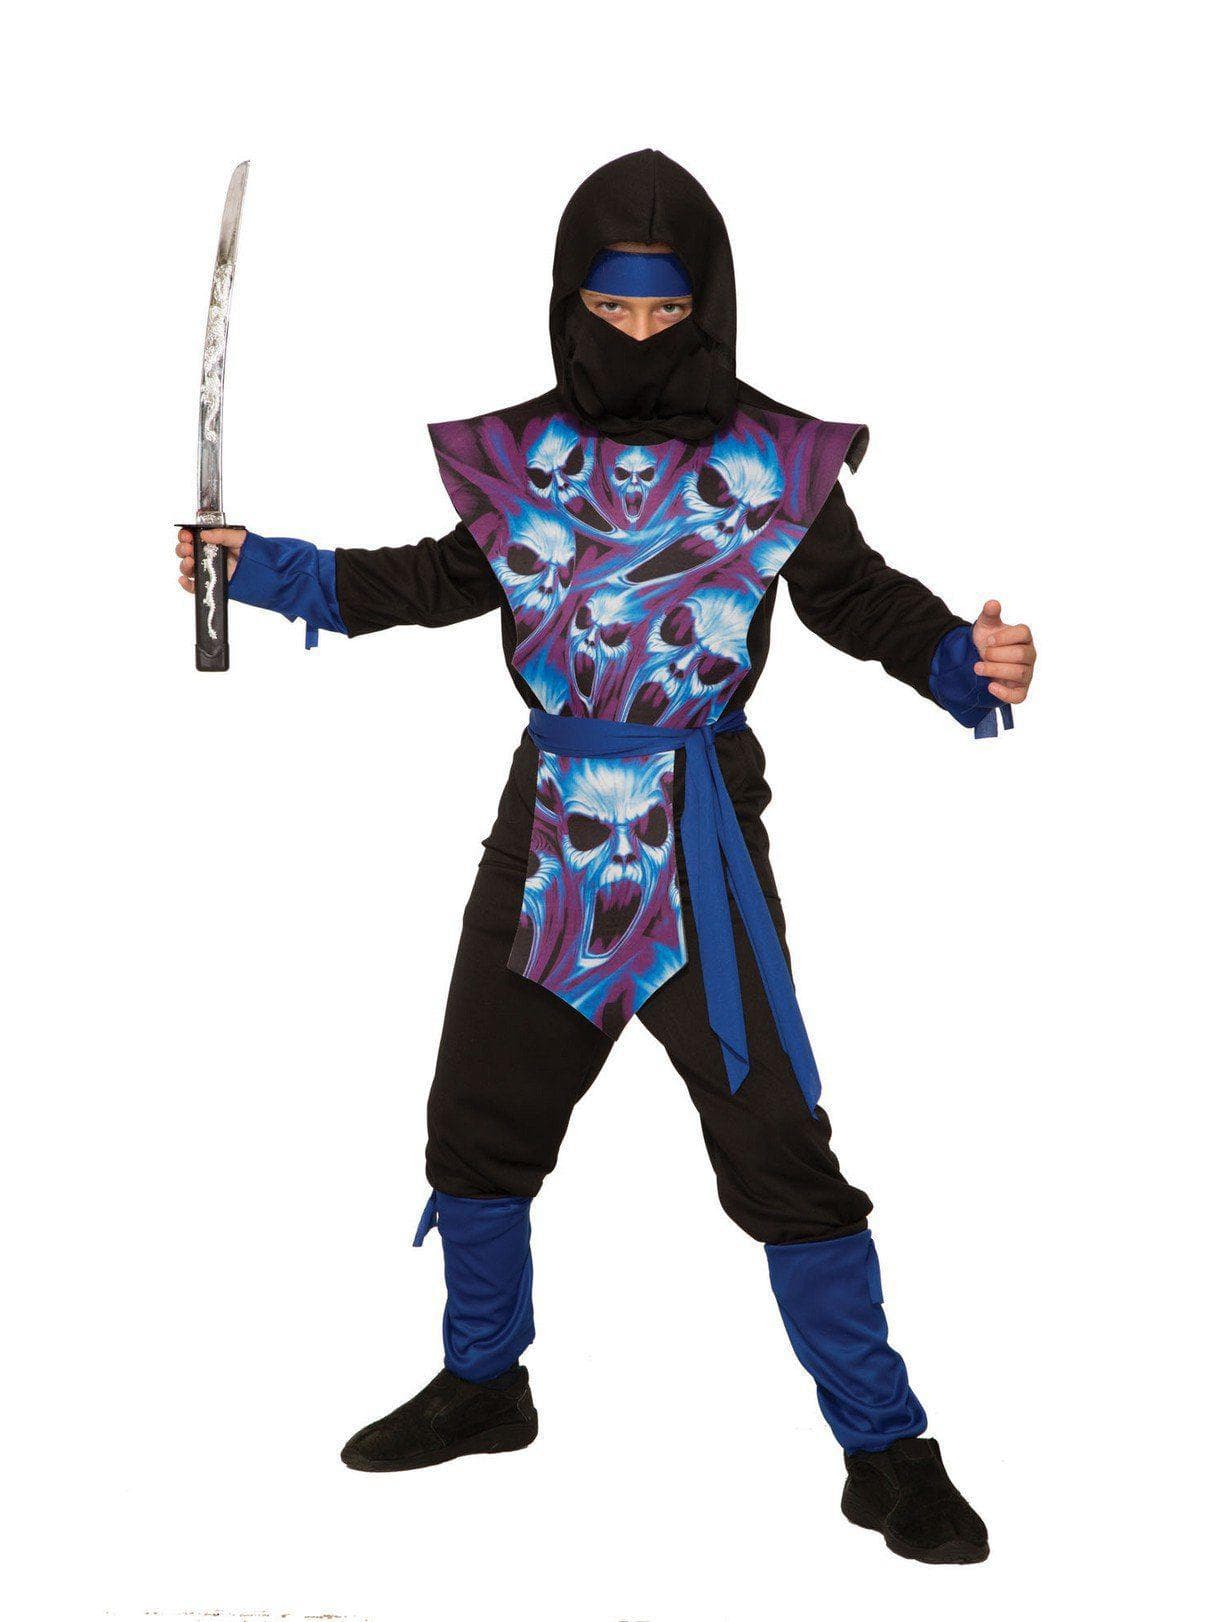 Kid's Ghost Ninja Costume - costumes.com